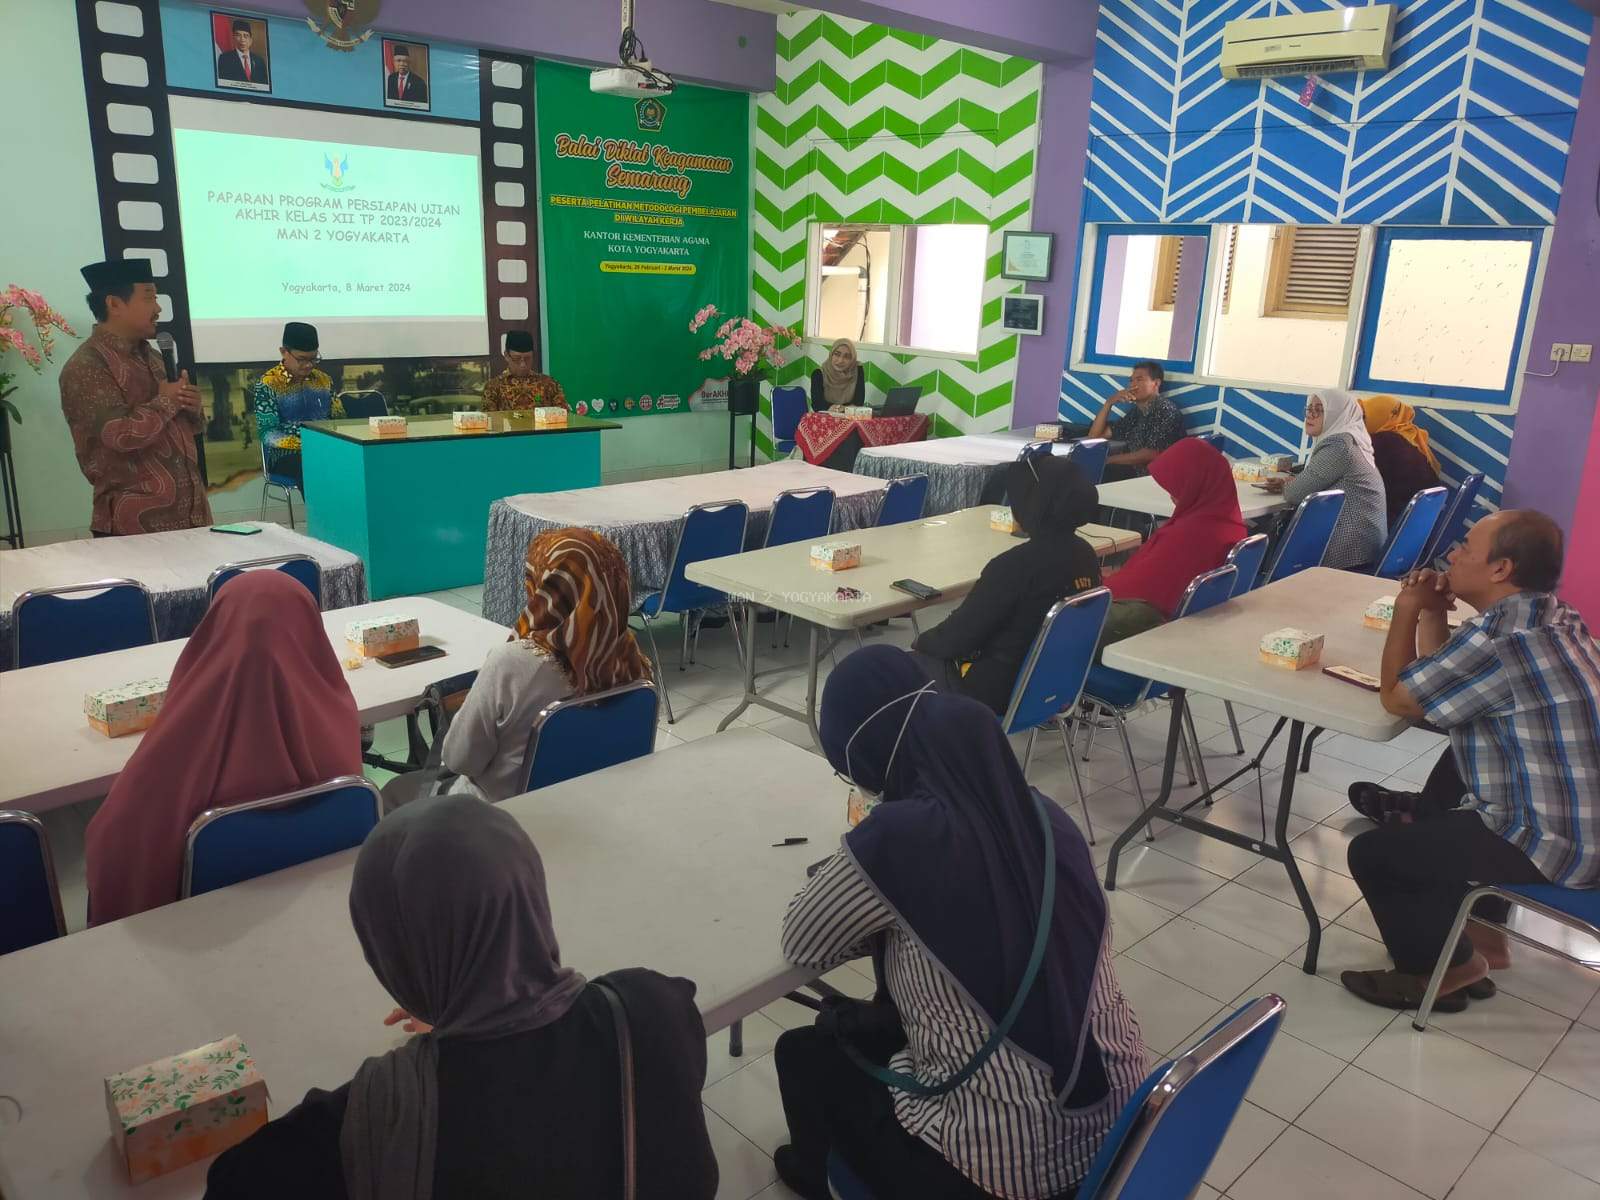 Persiapan Program Persiapan Ujian Akhir Kelas Xii Tp 2023/2024 Man 2 Yogyakarta